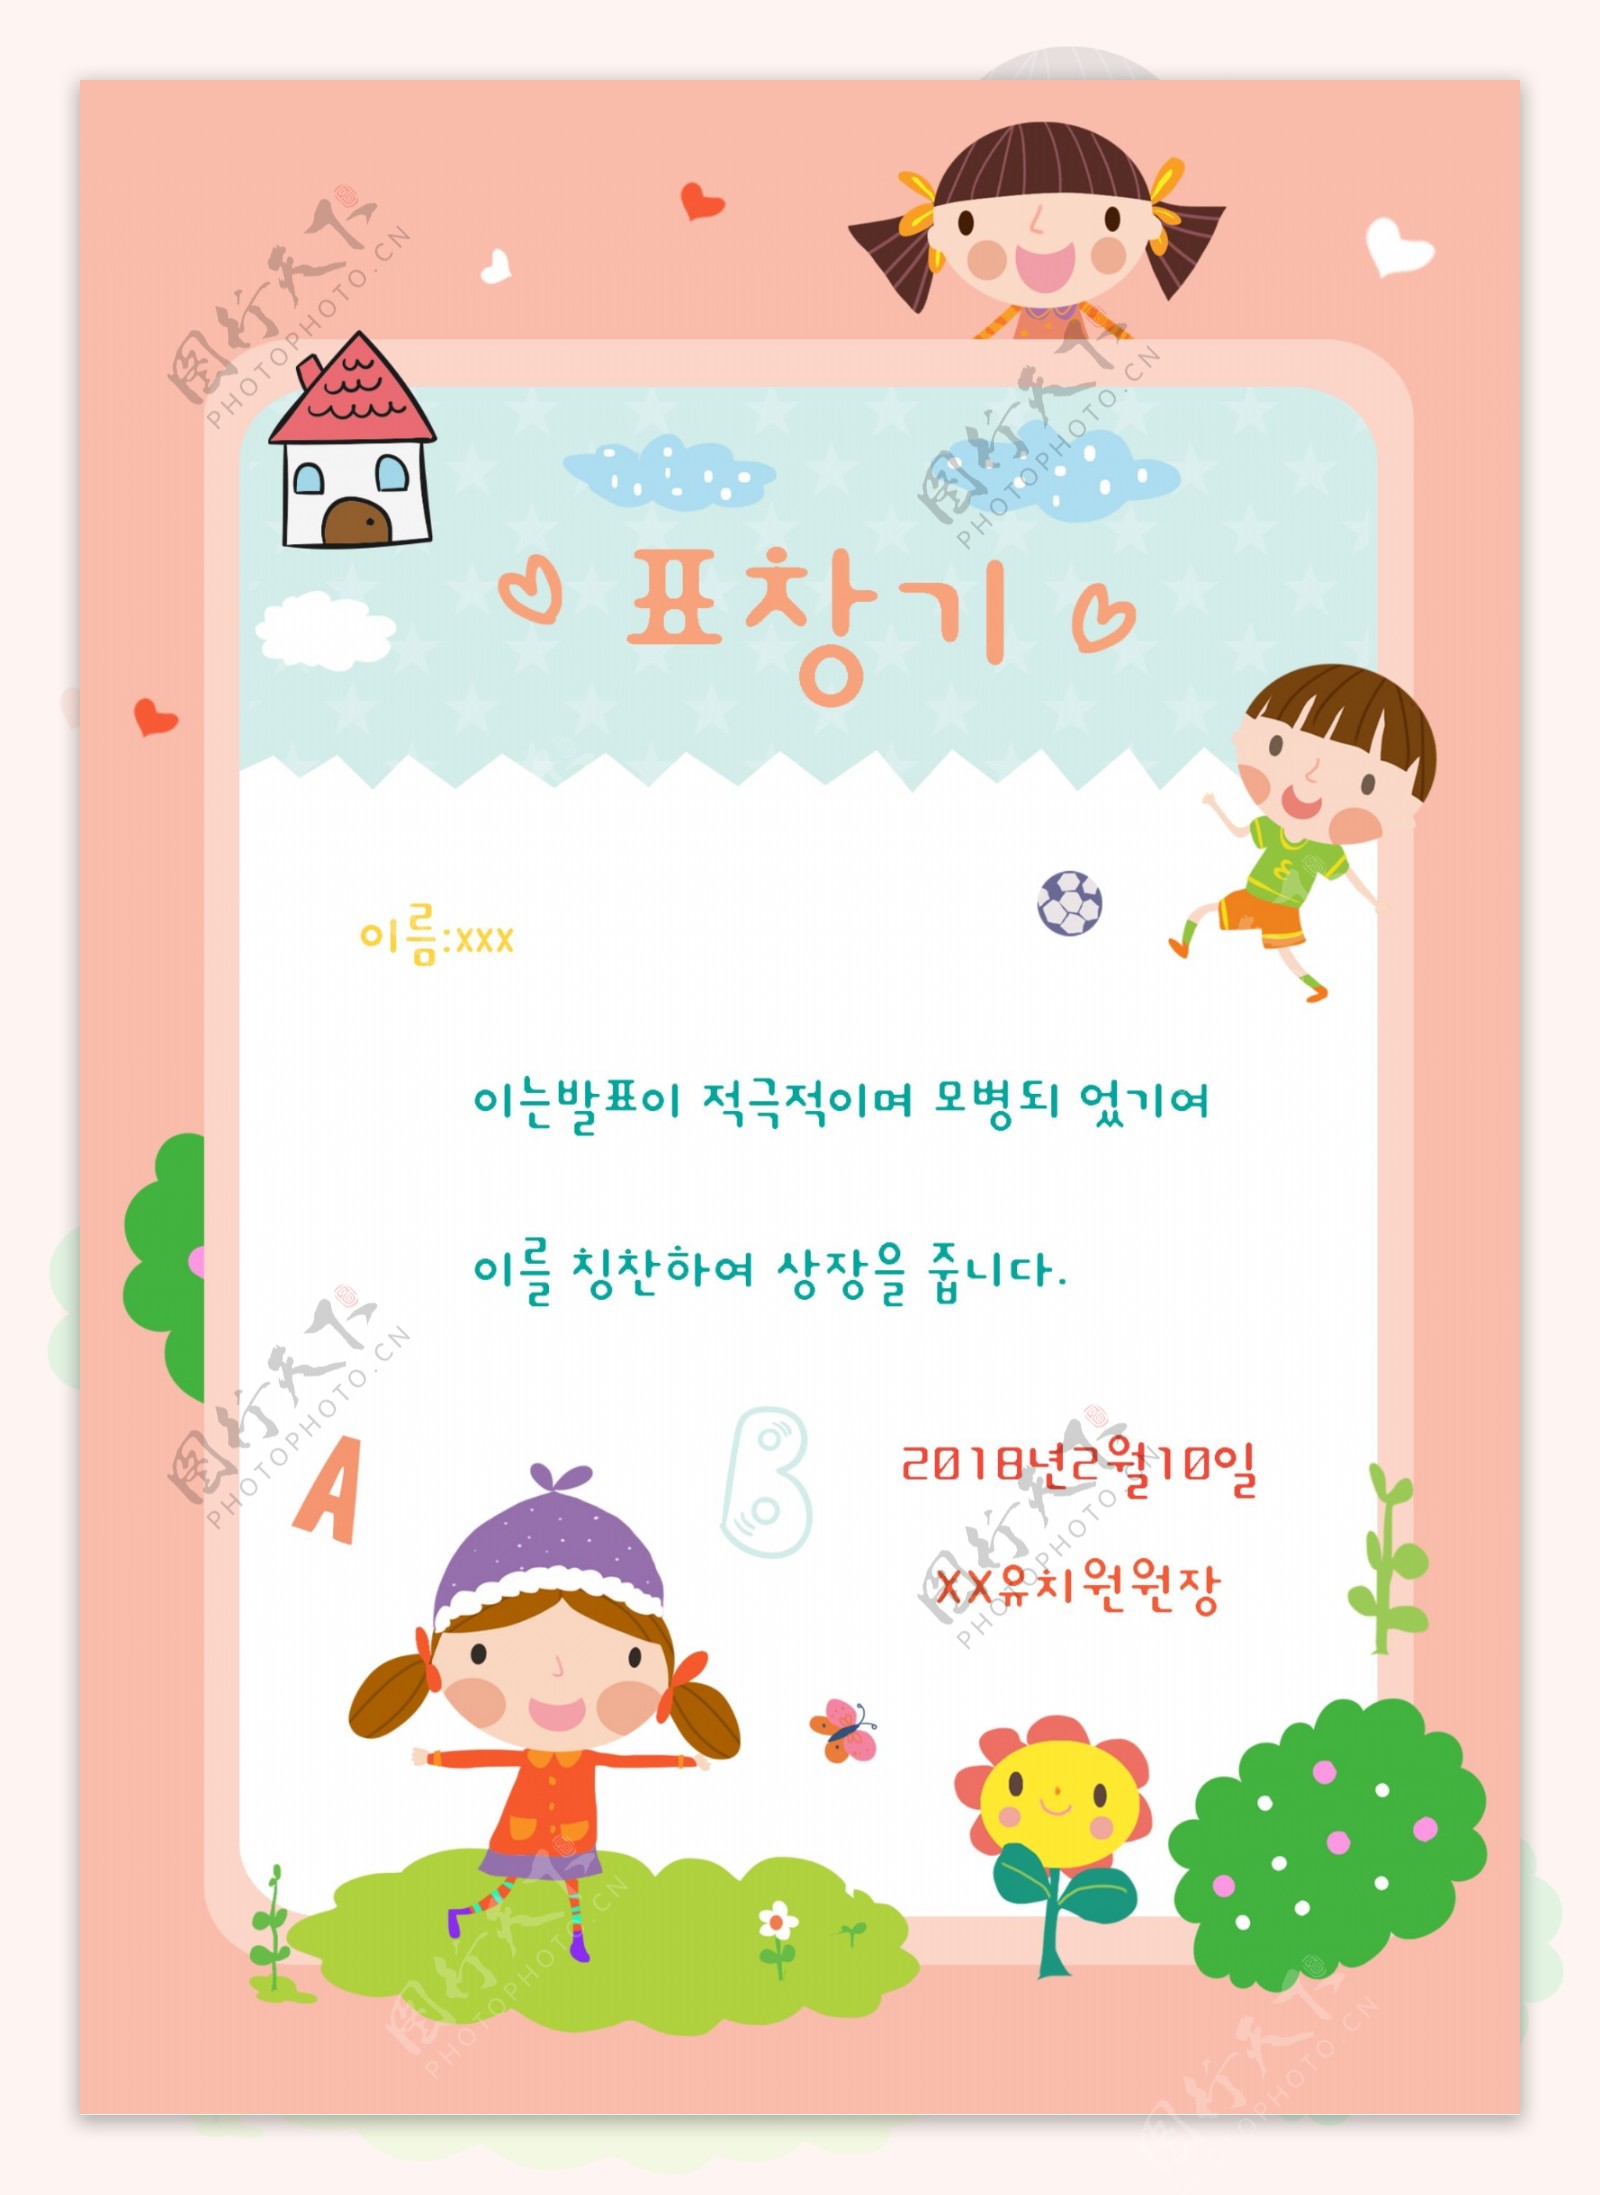 粉红色的可爱韩国风格卡通和儿童教育锦旗海报模板